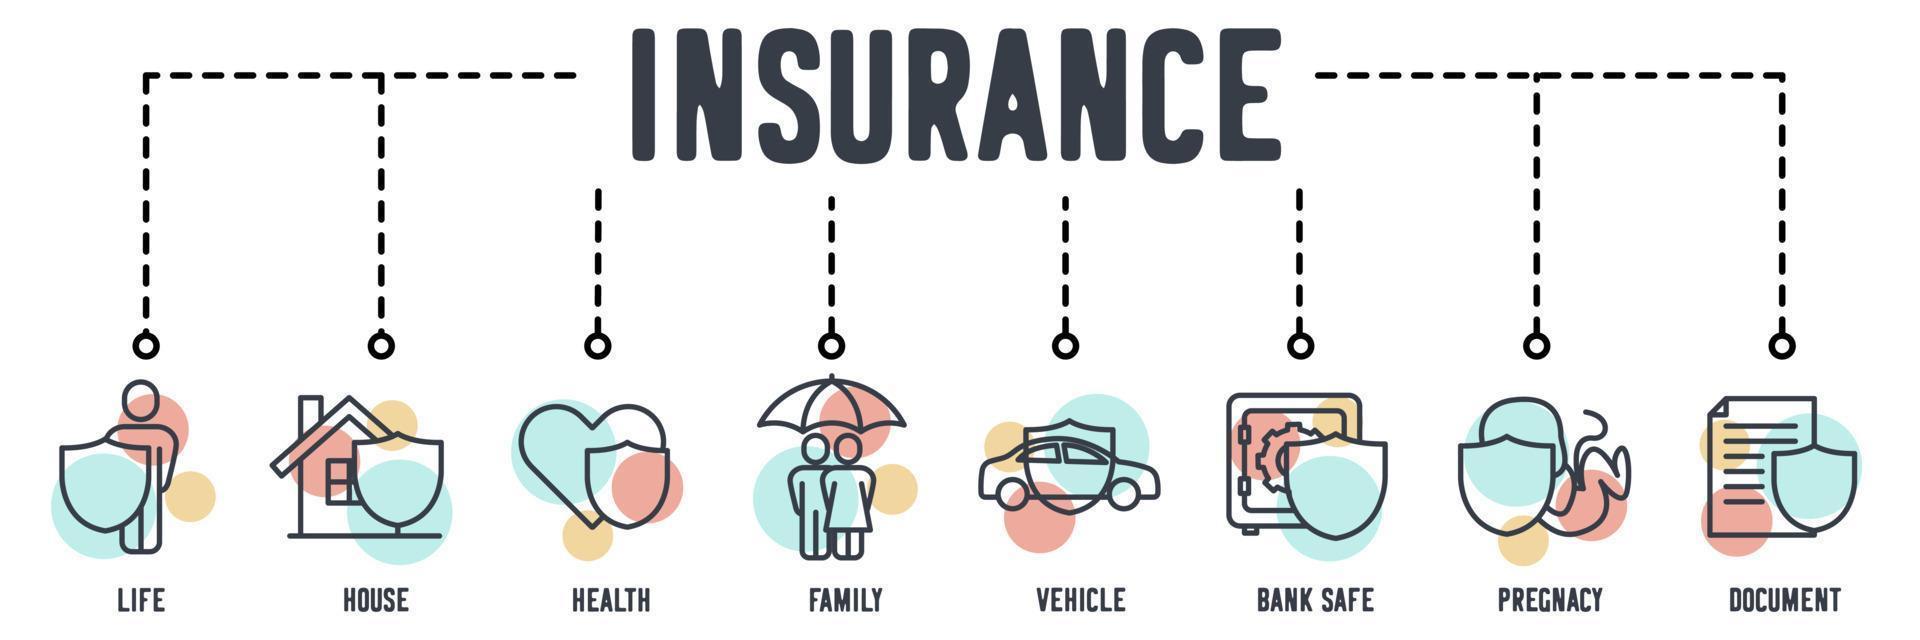 Web-Symbol für Versicherungsbanner. leben, haus, gesundheit, familie, fahrzeug, banksafe, schwangerschaft, dokumentvektorillustrationskonzept. vektor